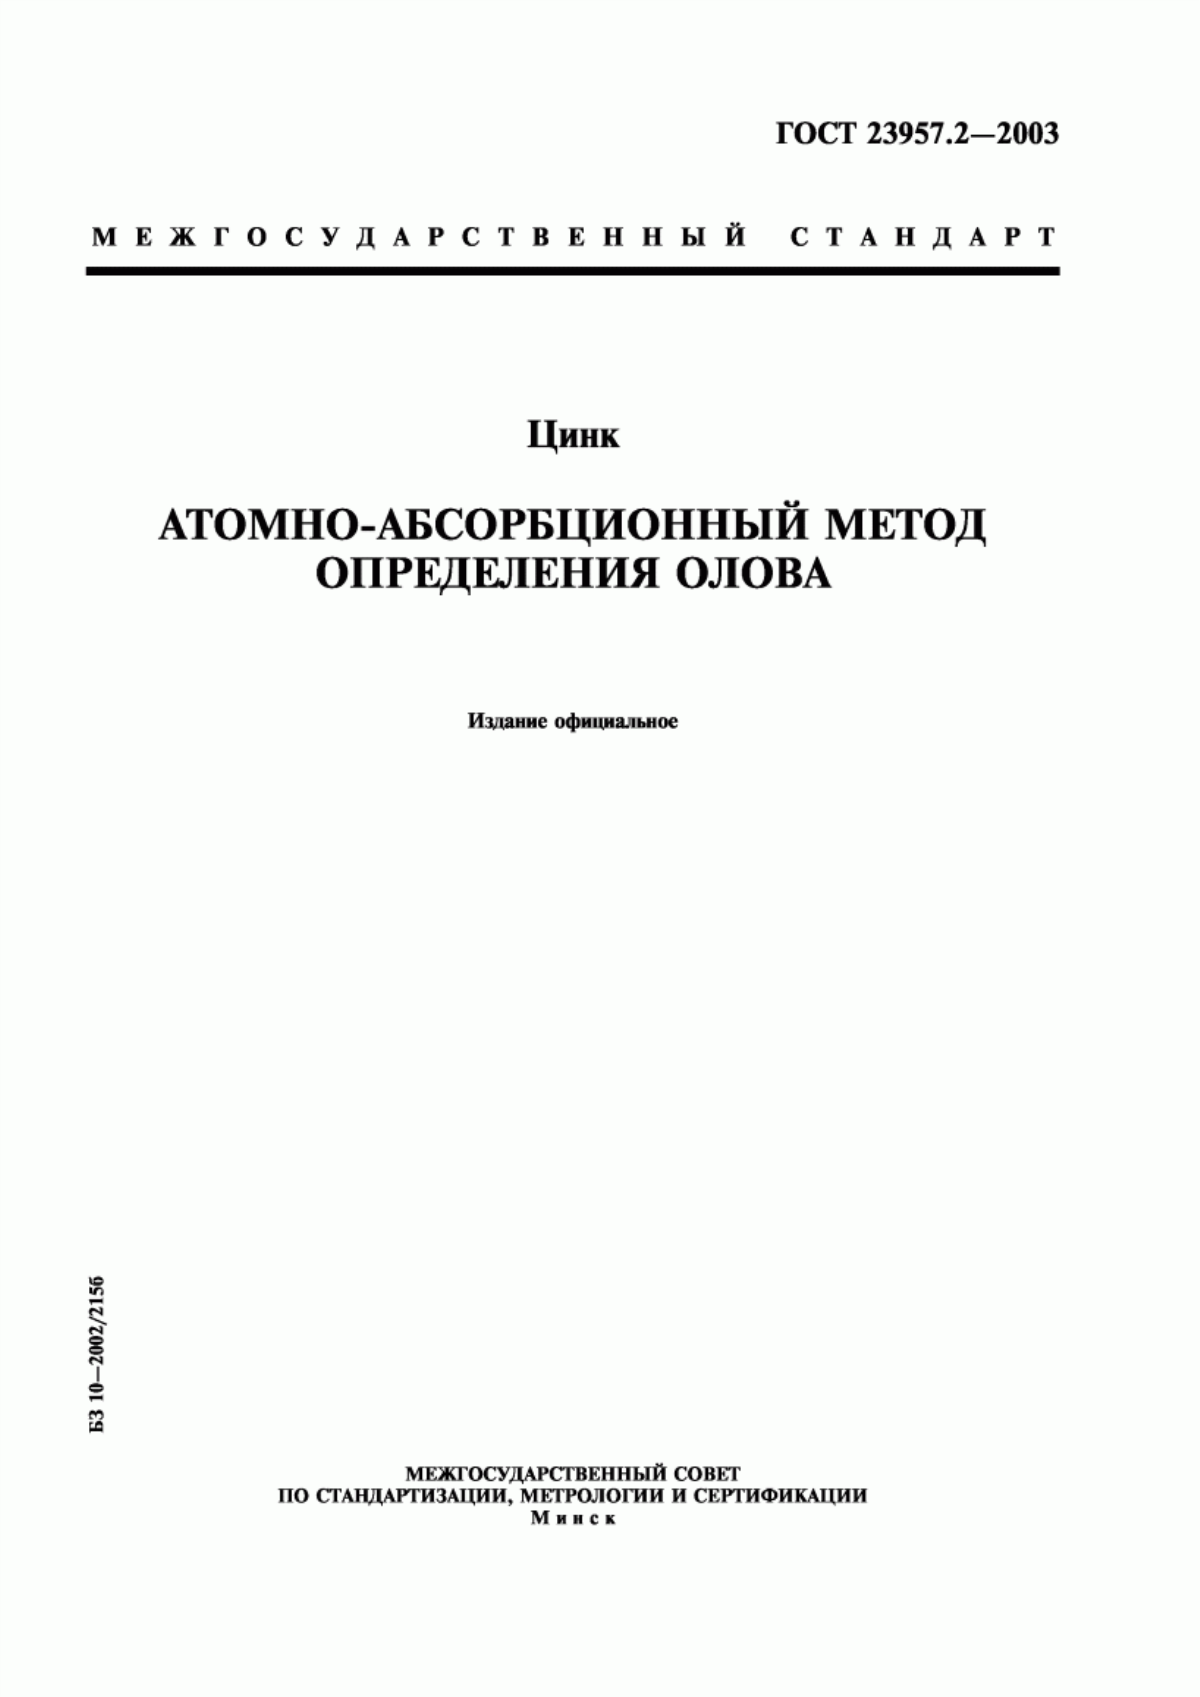 ГОСТ 23957.2-2003 Цинк. Атомно-абсорбционный метод определения олова